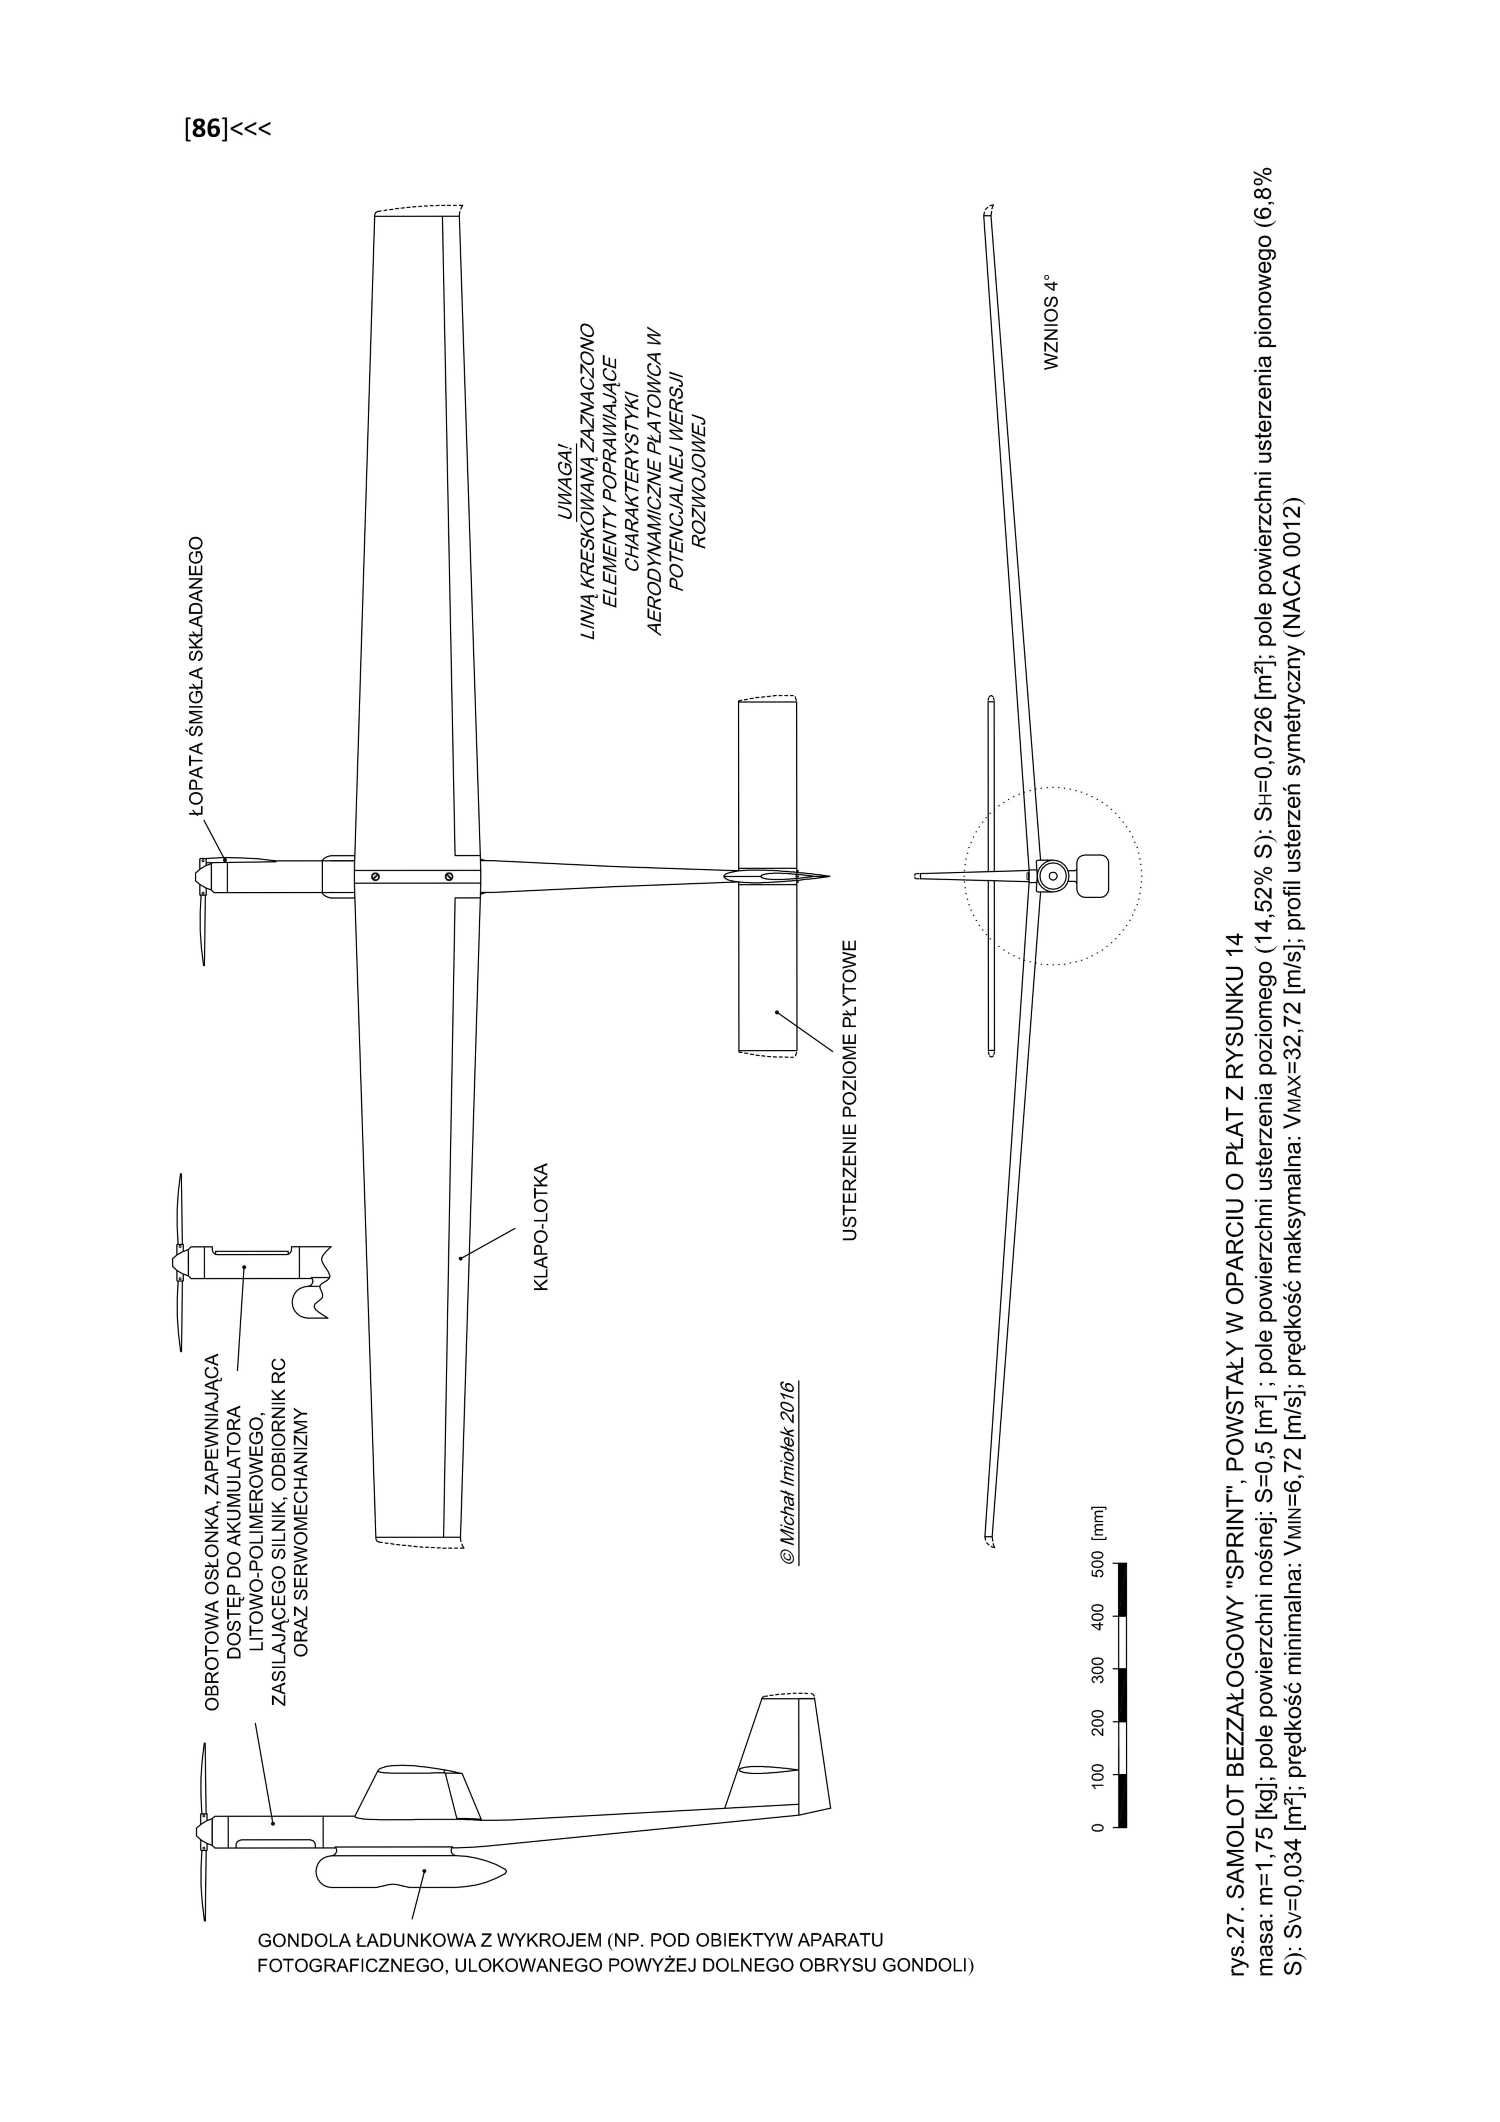 W stronę dronów: kilka słów o projektowaniu bezzałogowych samolotów